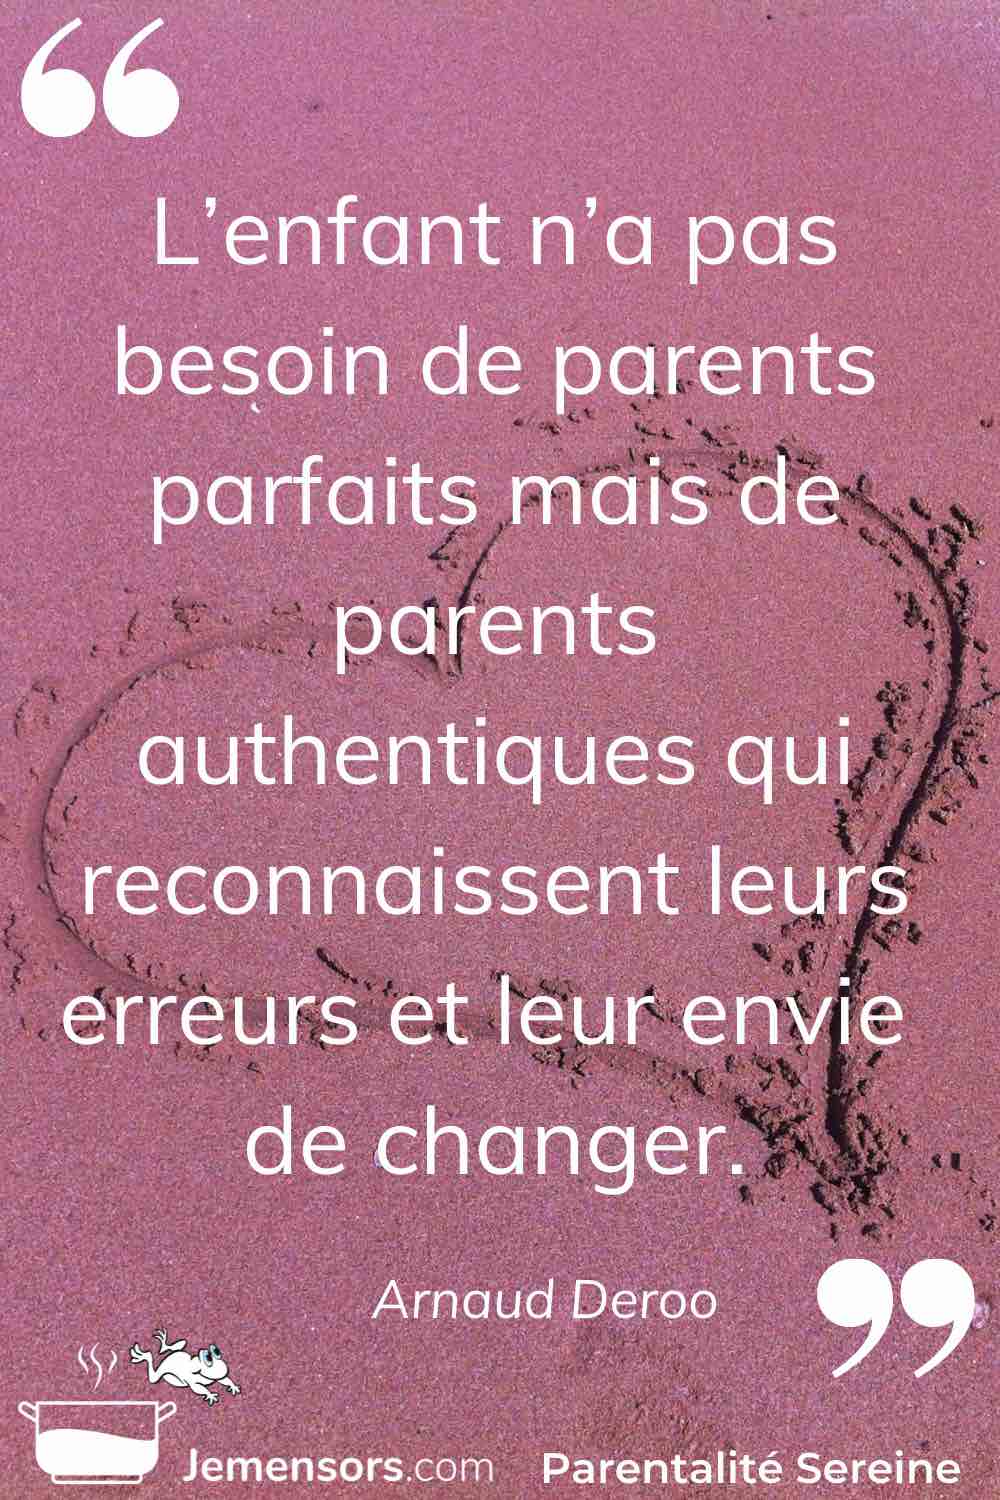 "L’enfant n’a pas besoin de parents parfaits mais de parents authentiques qui reconnaissent leurs erreurs et leur envie de changer." Arnaud Deroo